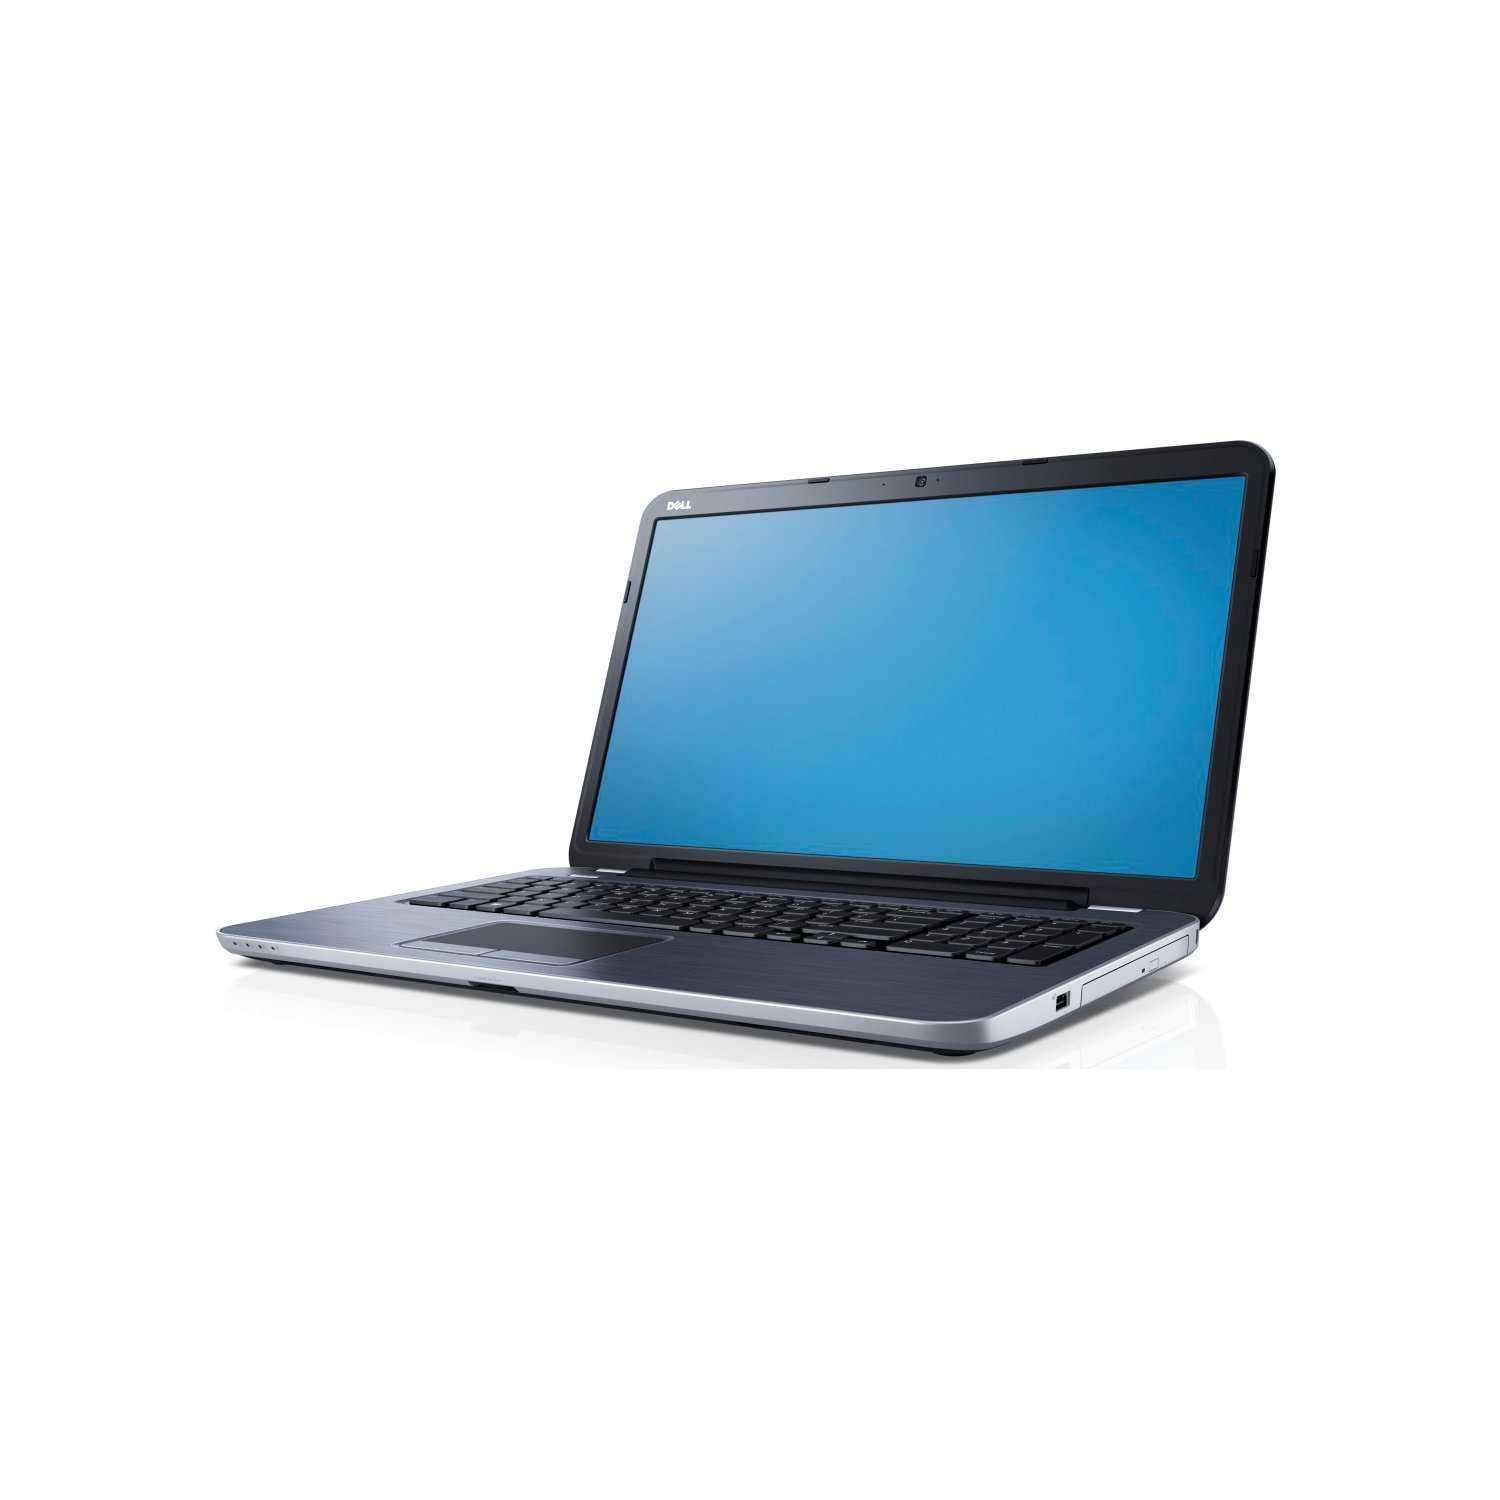 Ноутбук dell inspiron 17r 5721 — купить, цена и характеристики, отзывы